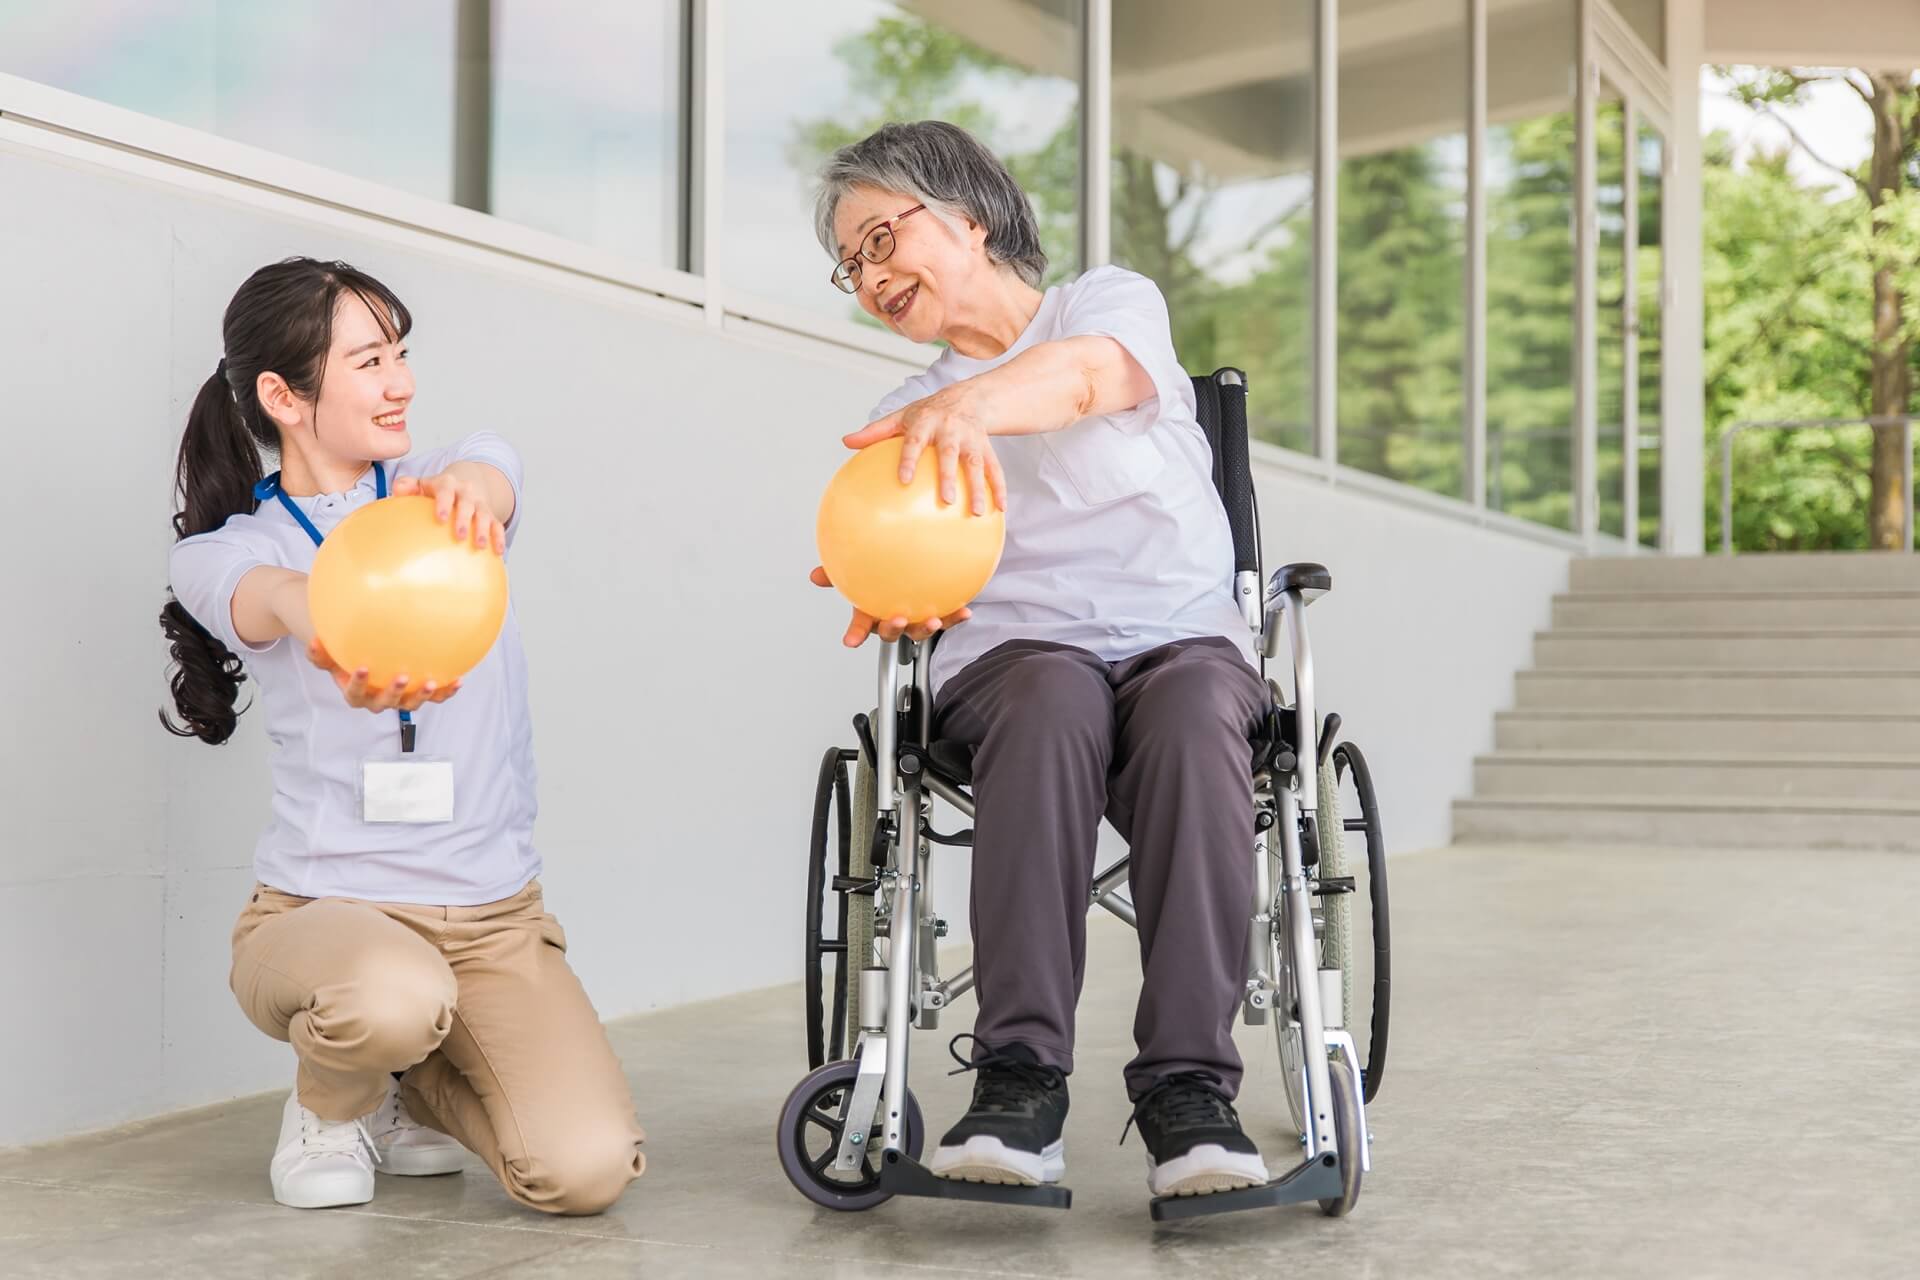 車椅子に乗った女性と女性介護スタッフが、空気の入ったボールを両手で持って、運動している様子の写真